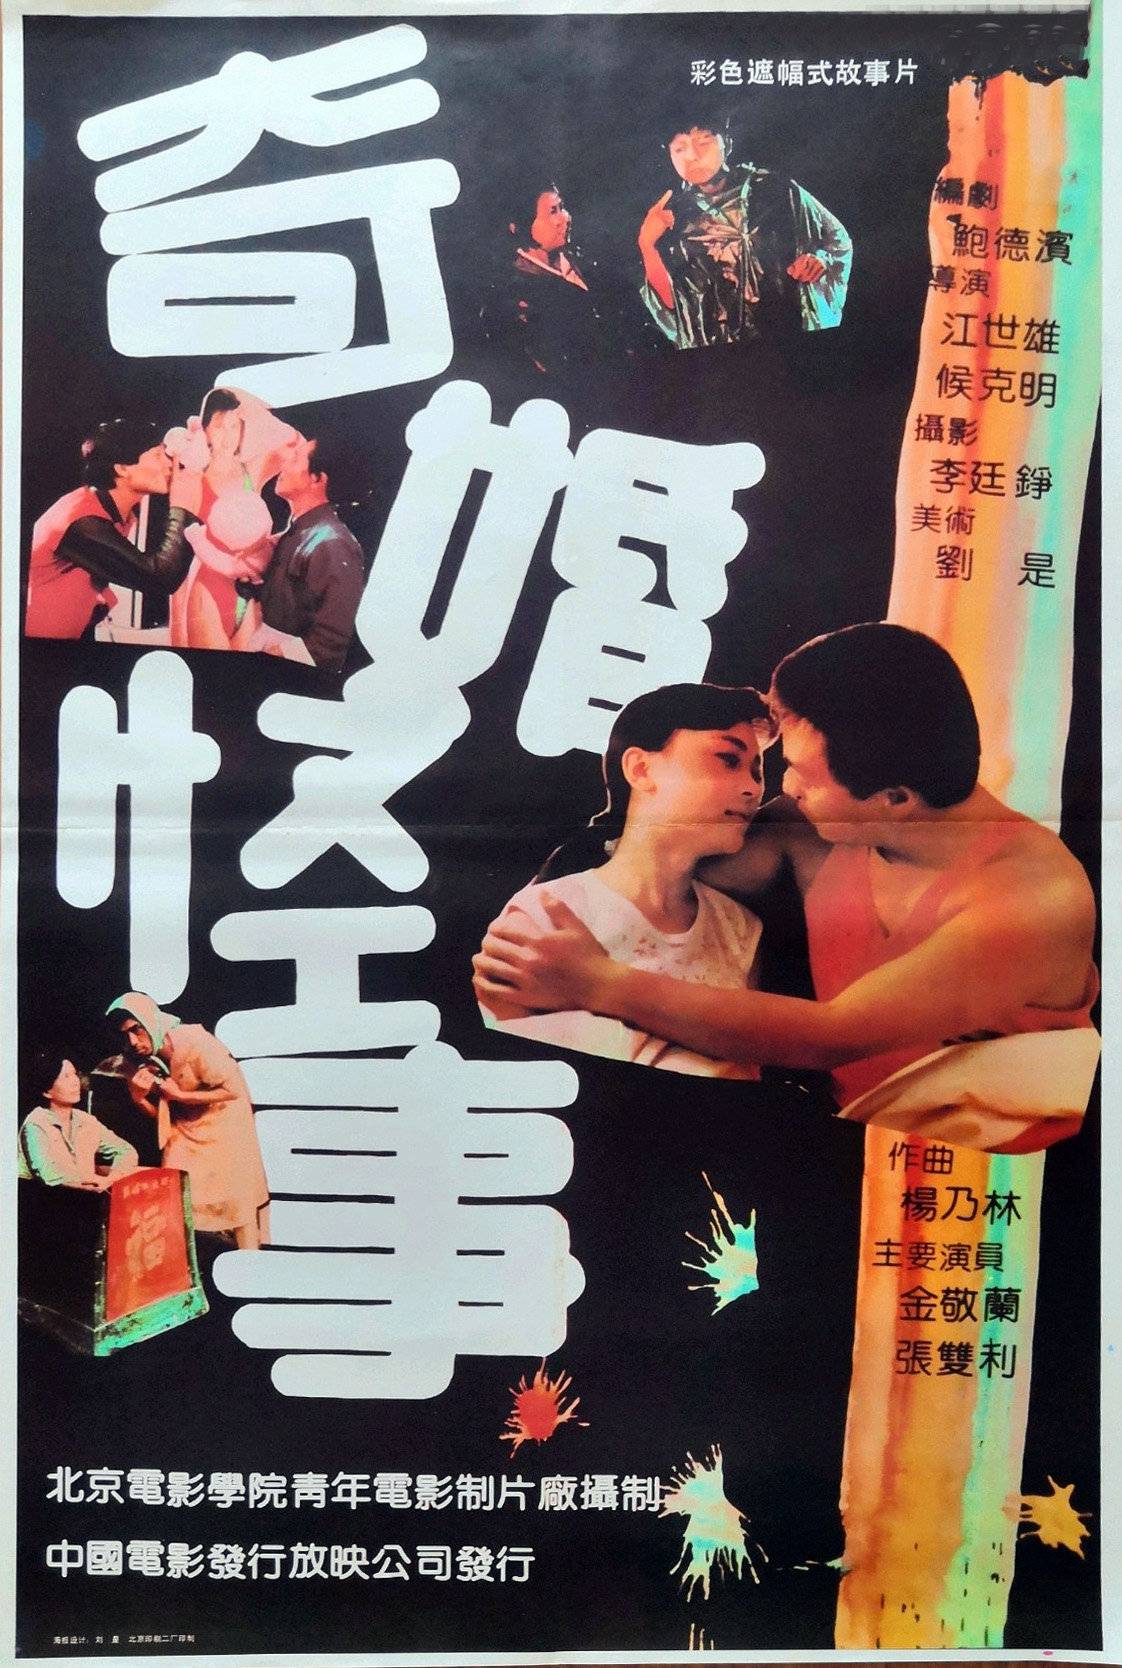 《奇婚怪事》，江世雄、侯克明导演，1991年上映